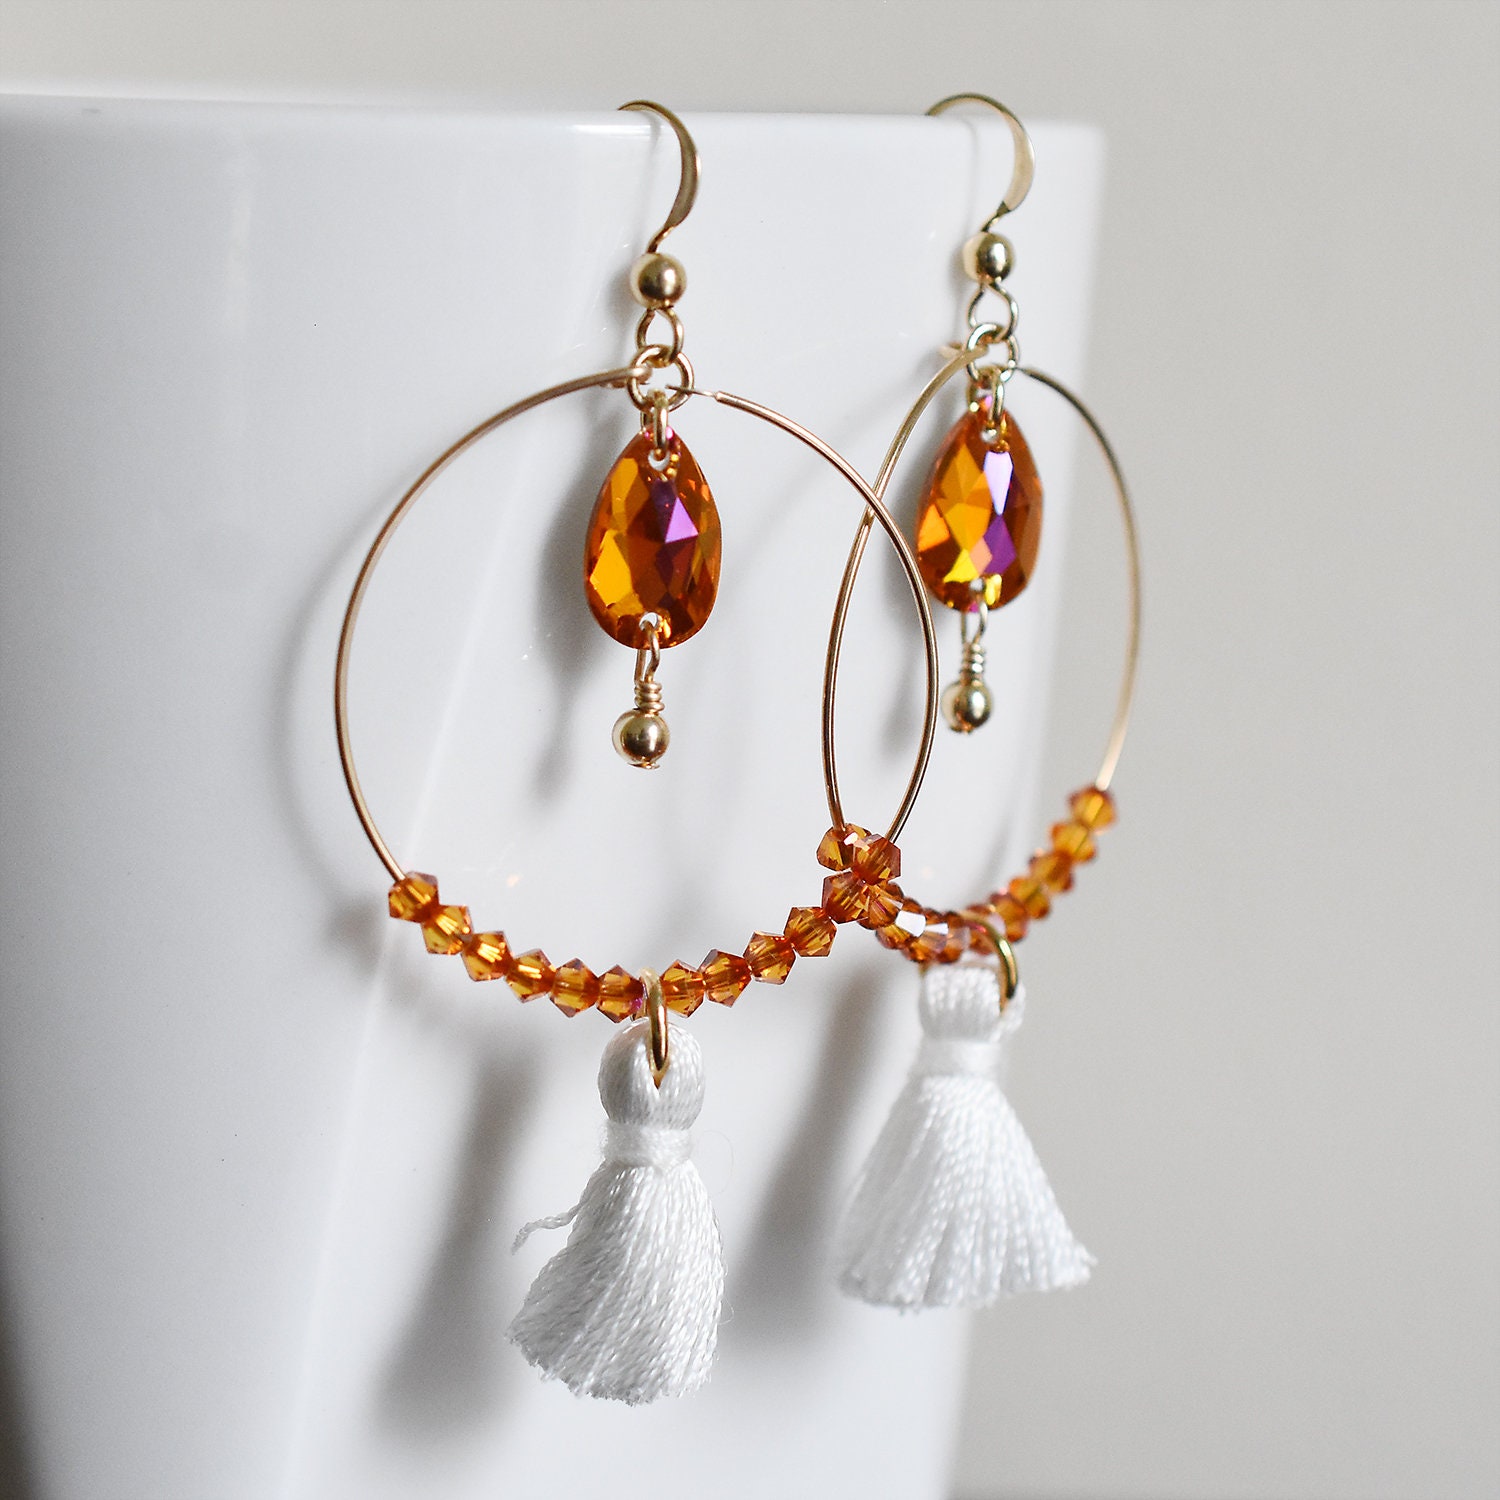 Buy Coral Beaded Earrings Handmade Elegant Boho Wedding Jewelry Online in India - Etsy